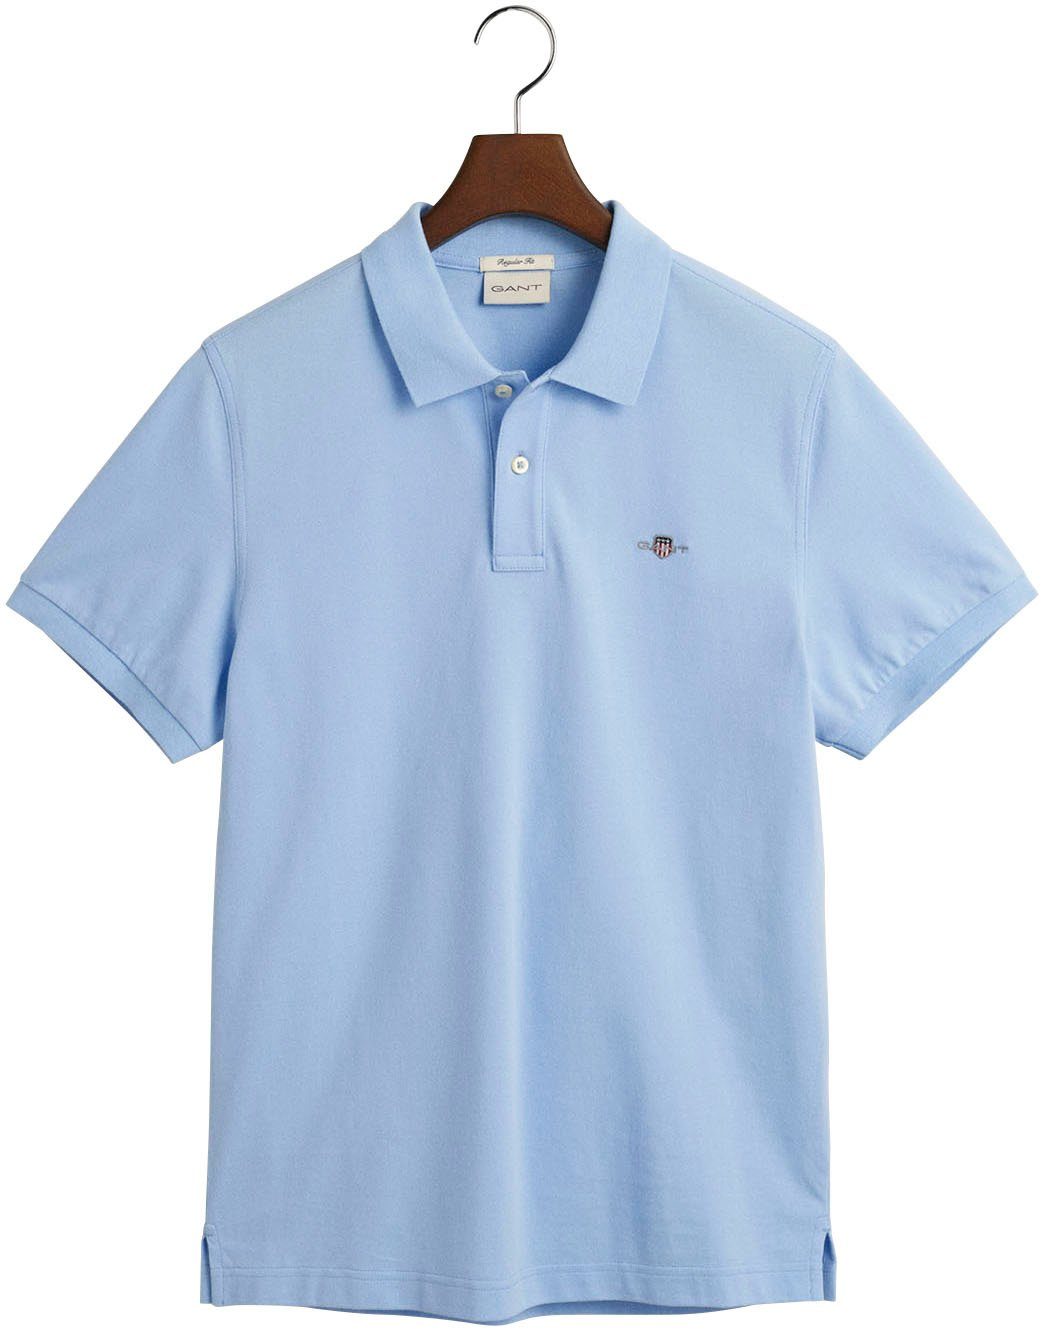 SS REG der Poloshirt blue SHIELD capri auf POLO PIQUE Logostickerei Gant mit Brust